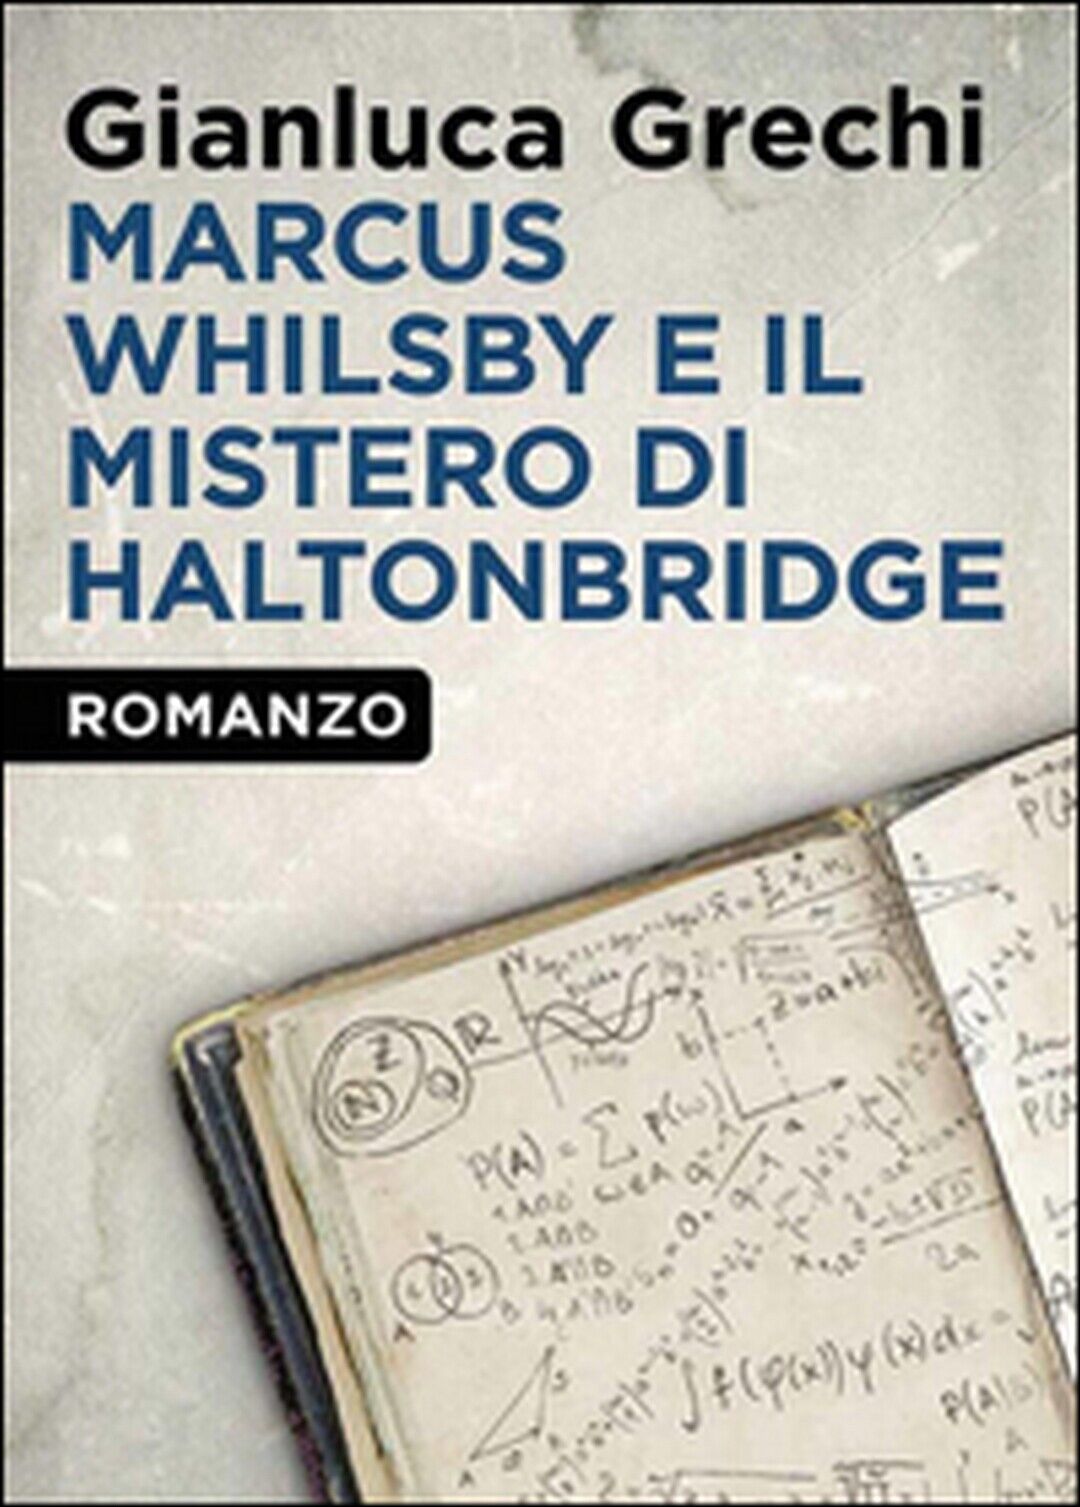 Marcus Whilsby e il mistero di Haltonbridge, Gianluca Grechi,  2014,  Youcanpr.